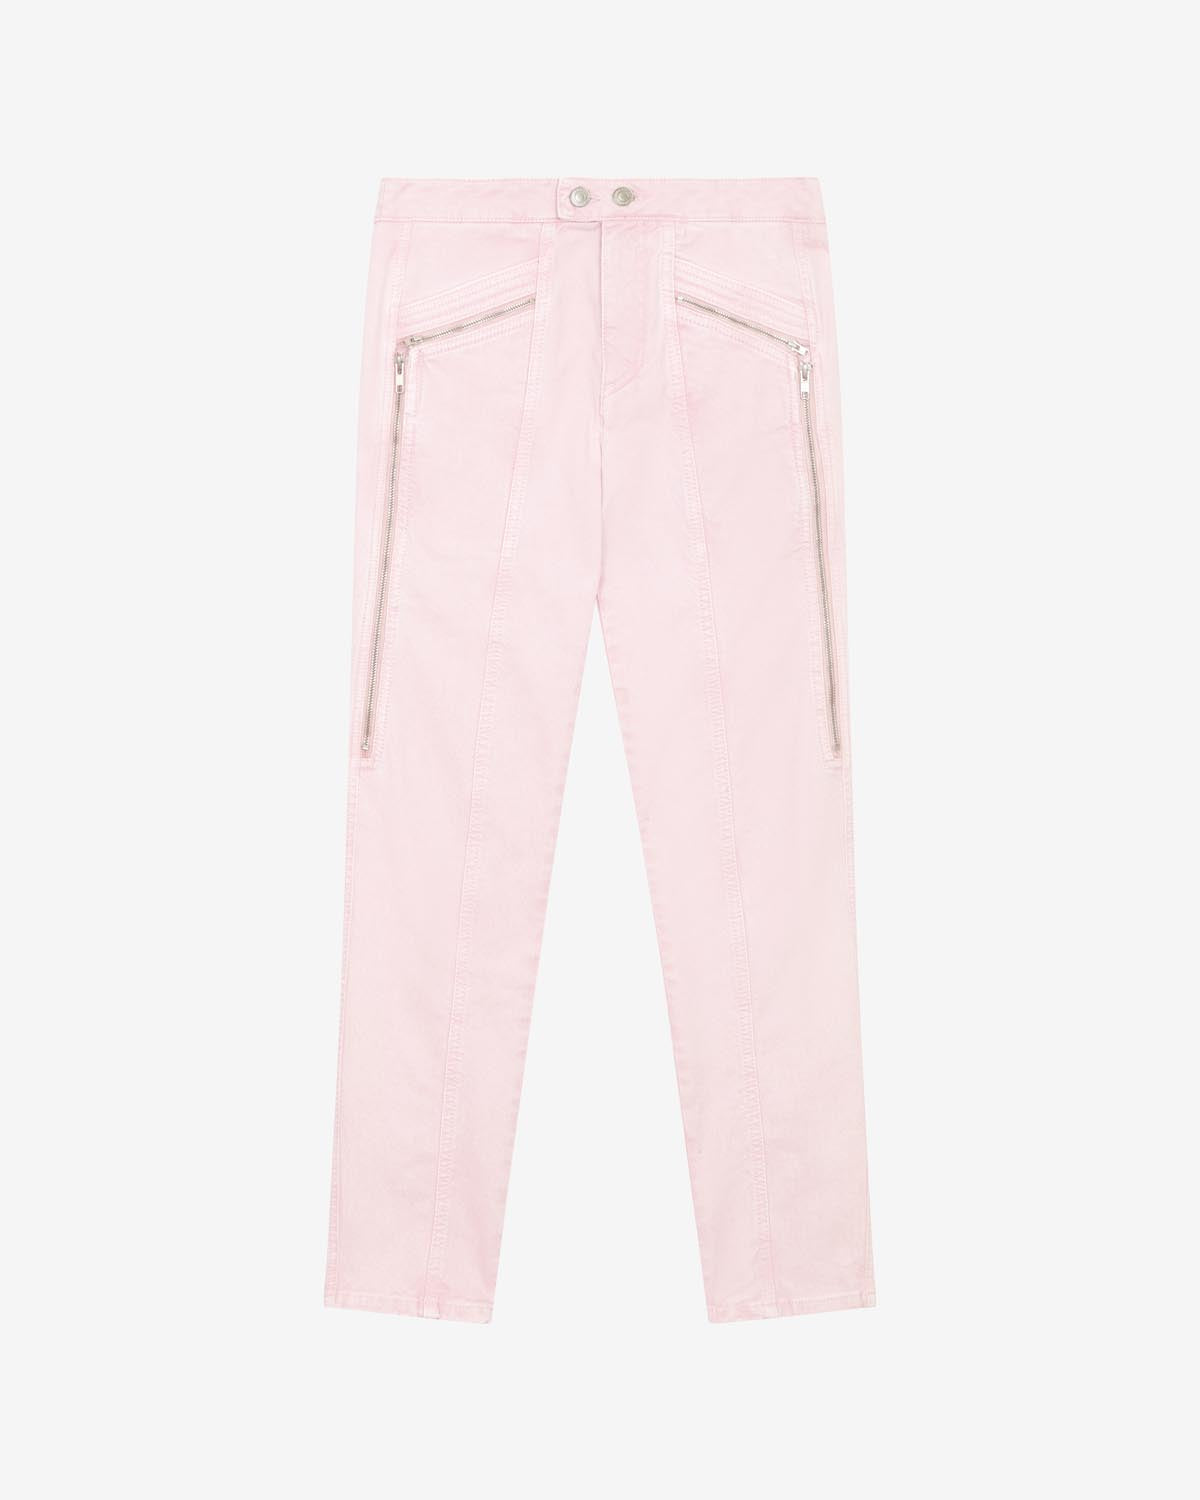 Prezi pants Woman Light pink 1